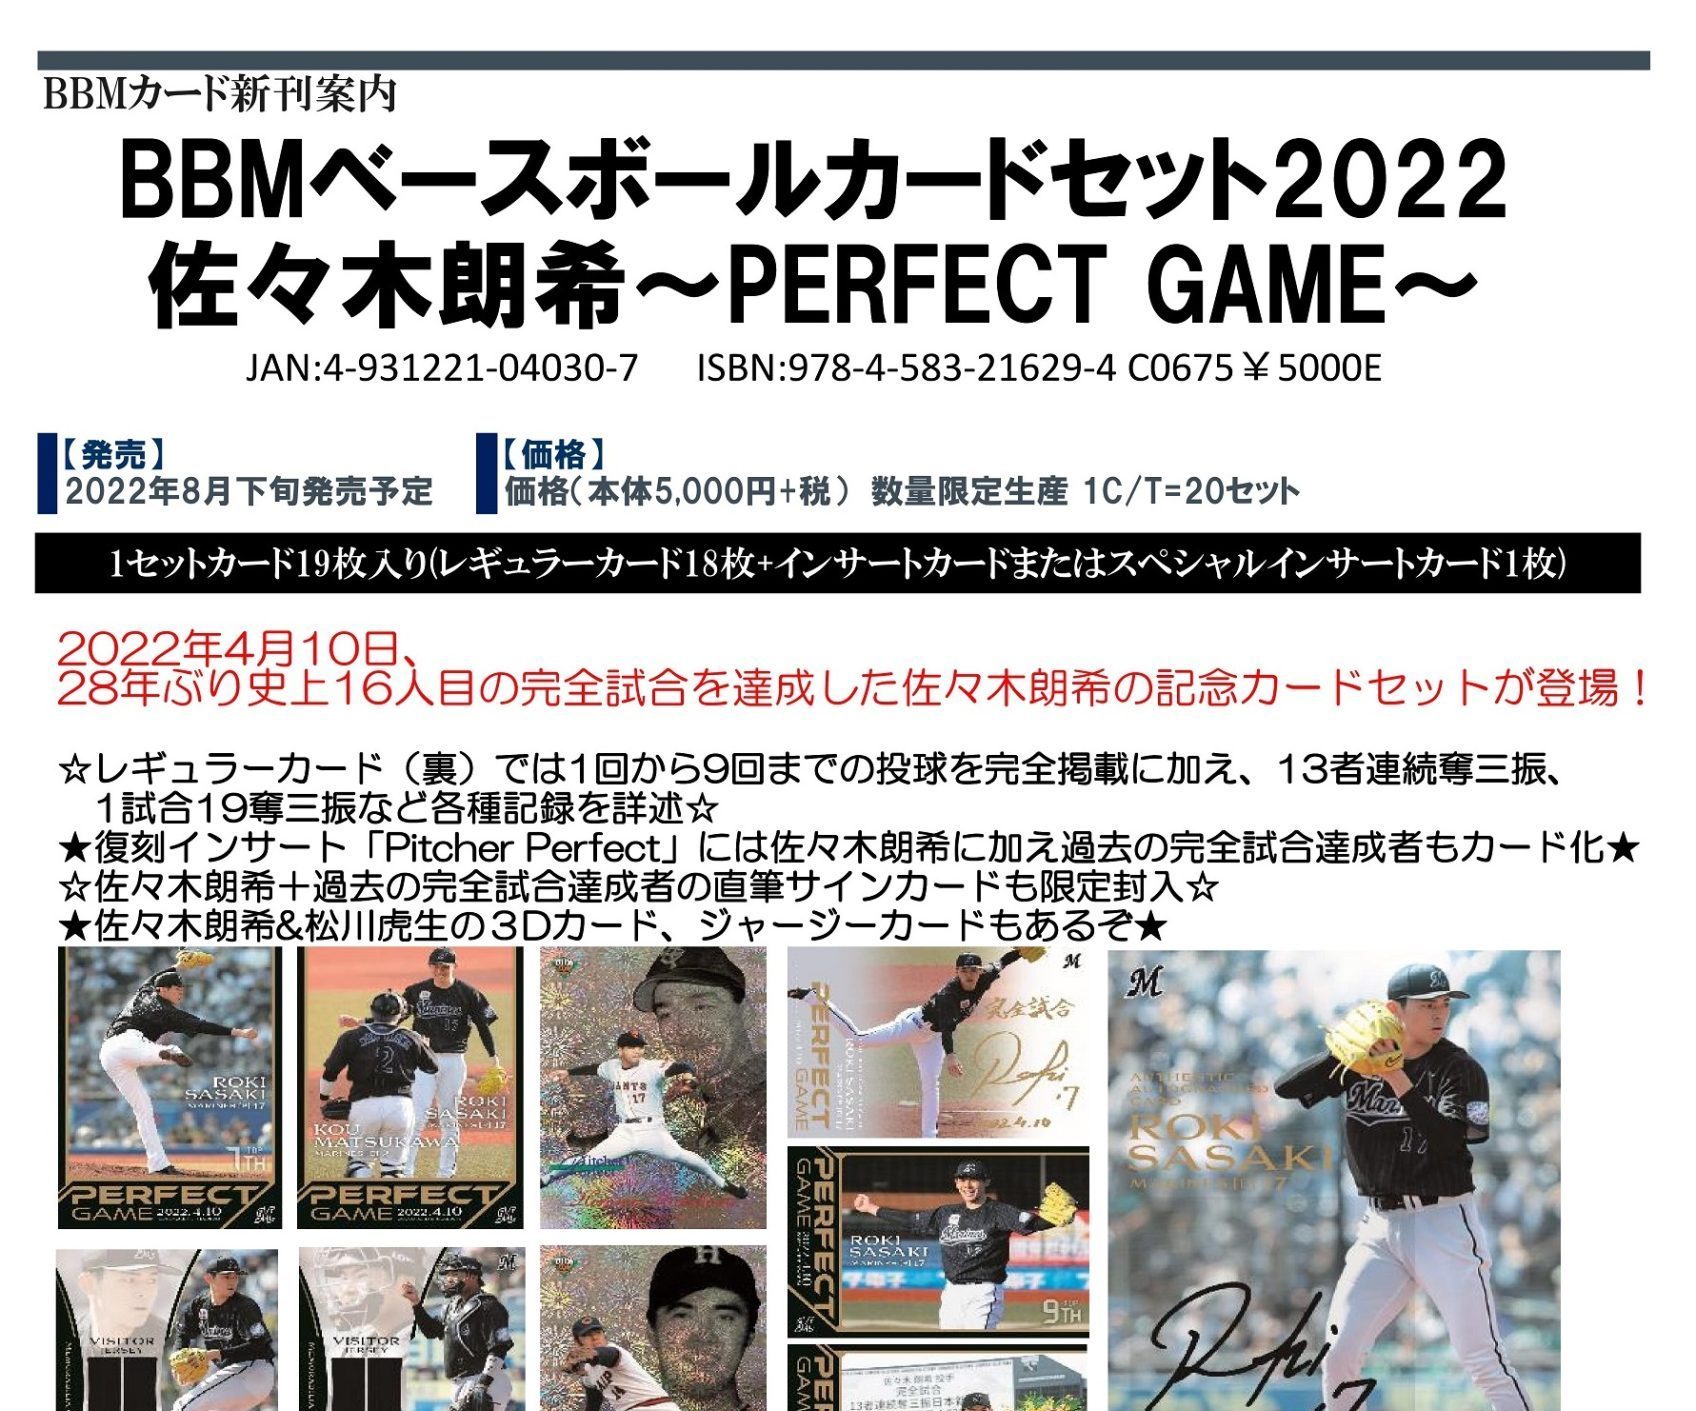 【メーカー再生品】 BBMベースボールカードセット2022 佐々木朗希～PERFECT GAME～ - 11plustutorsinessex